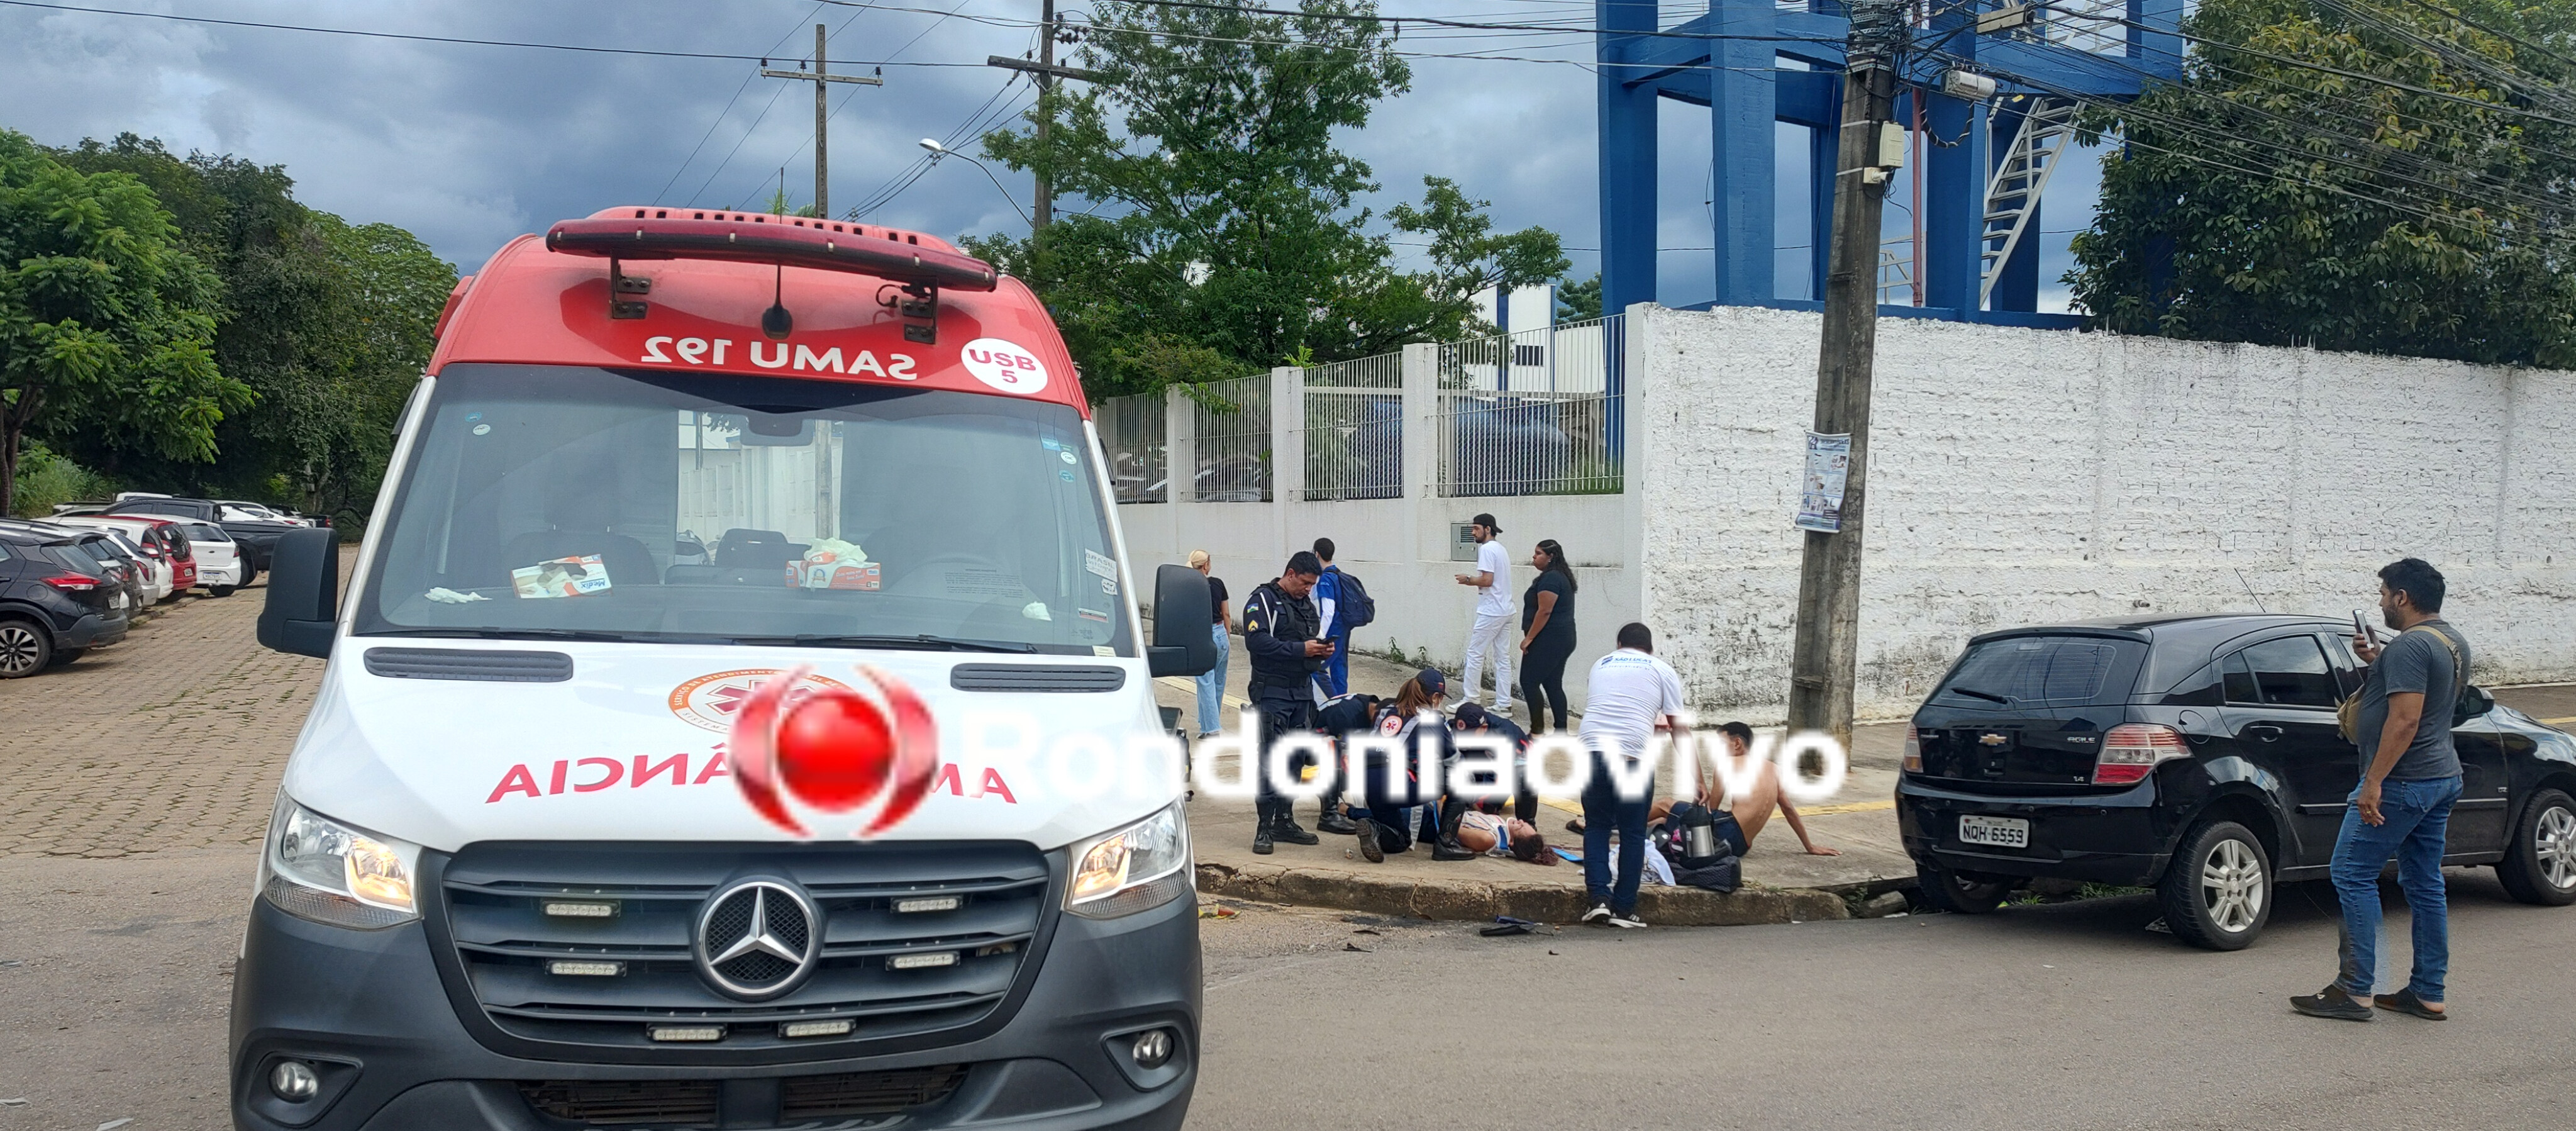 VÍDEO: Casal de primos é atropelado gravemente por S10 na capital